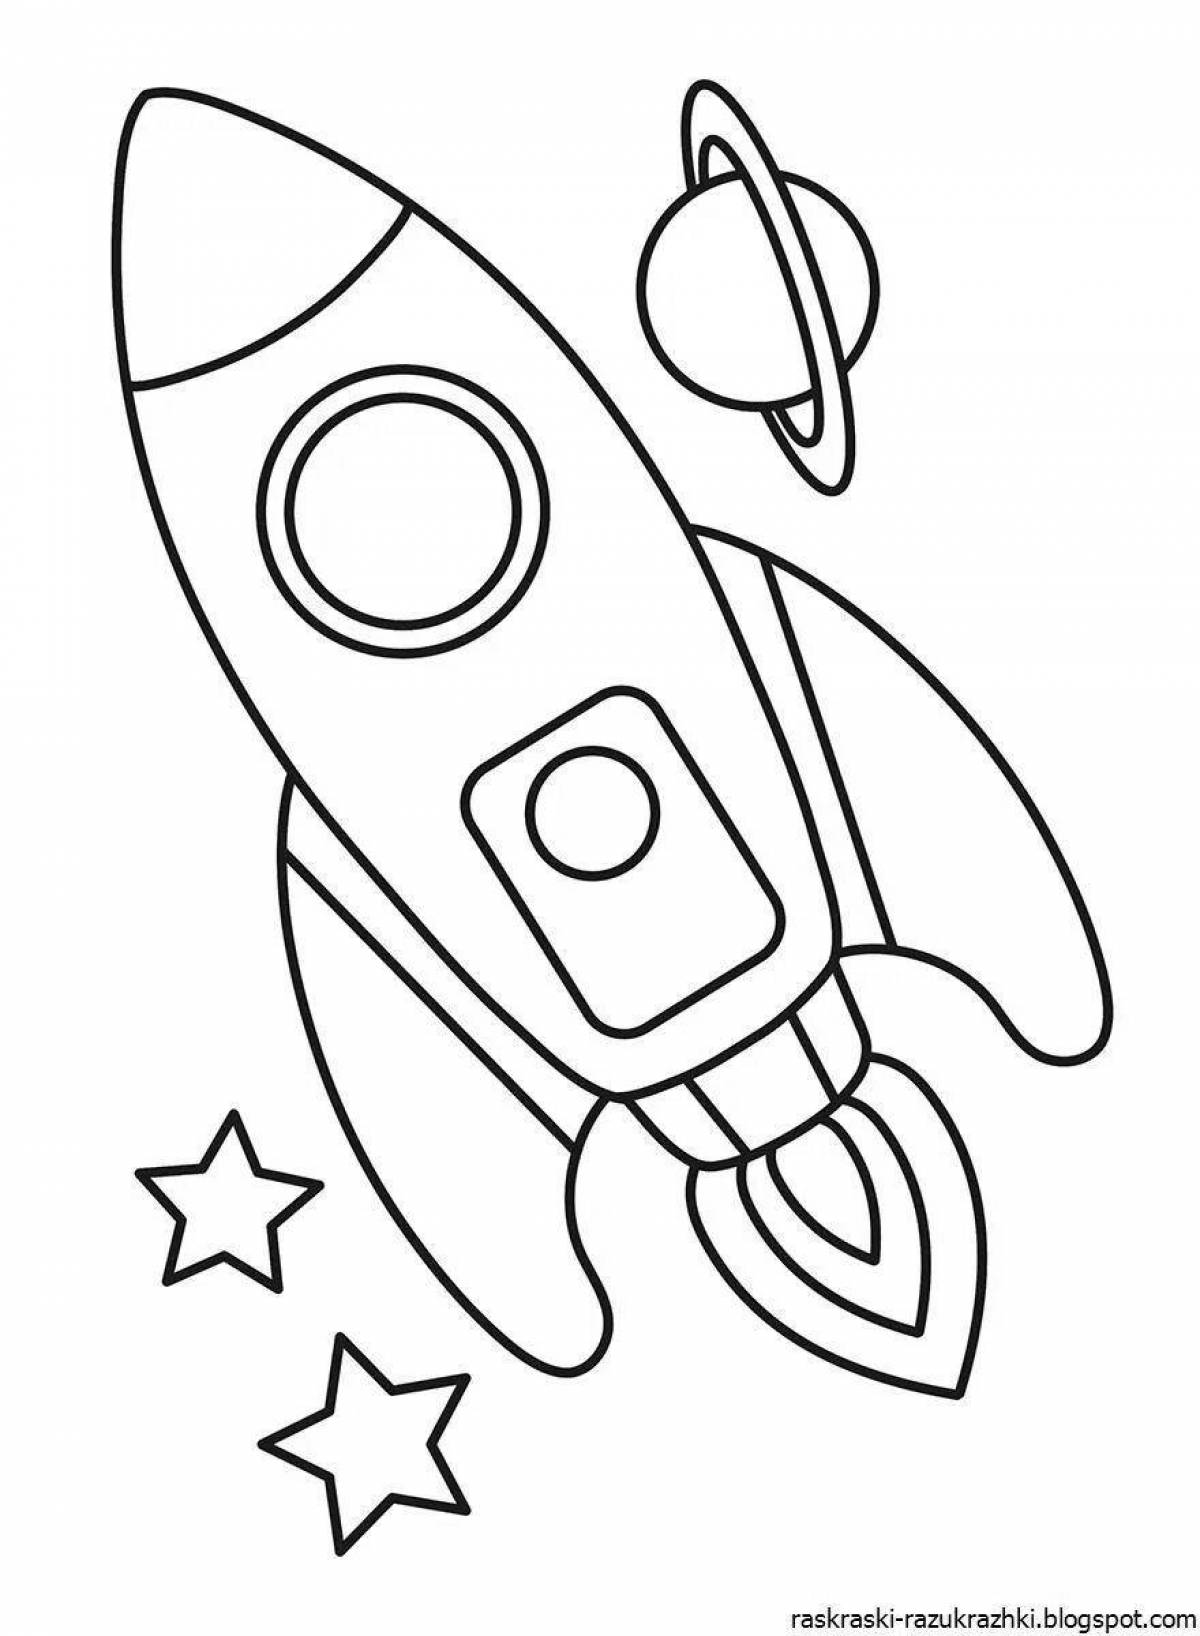 Раскраска ракета для детей 4 лет. Ракета раскраска. Космос раскраска для детей. Ракета раскраска для детей. Раскраска ракета для детей 3-4 лет.